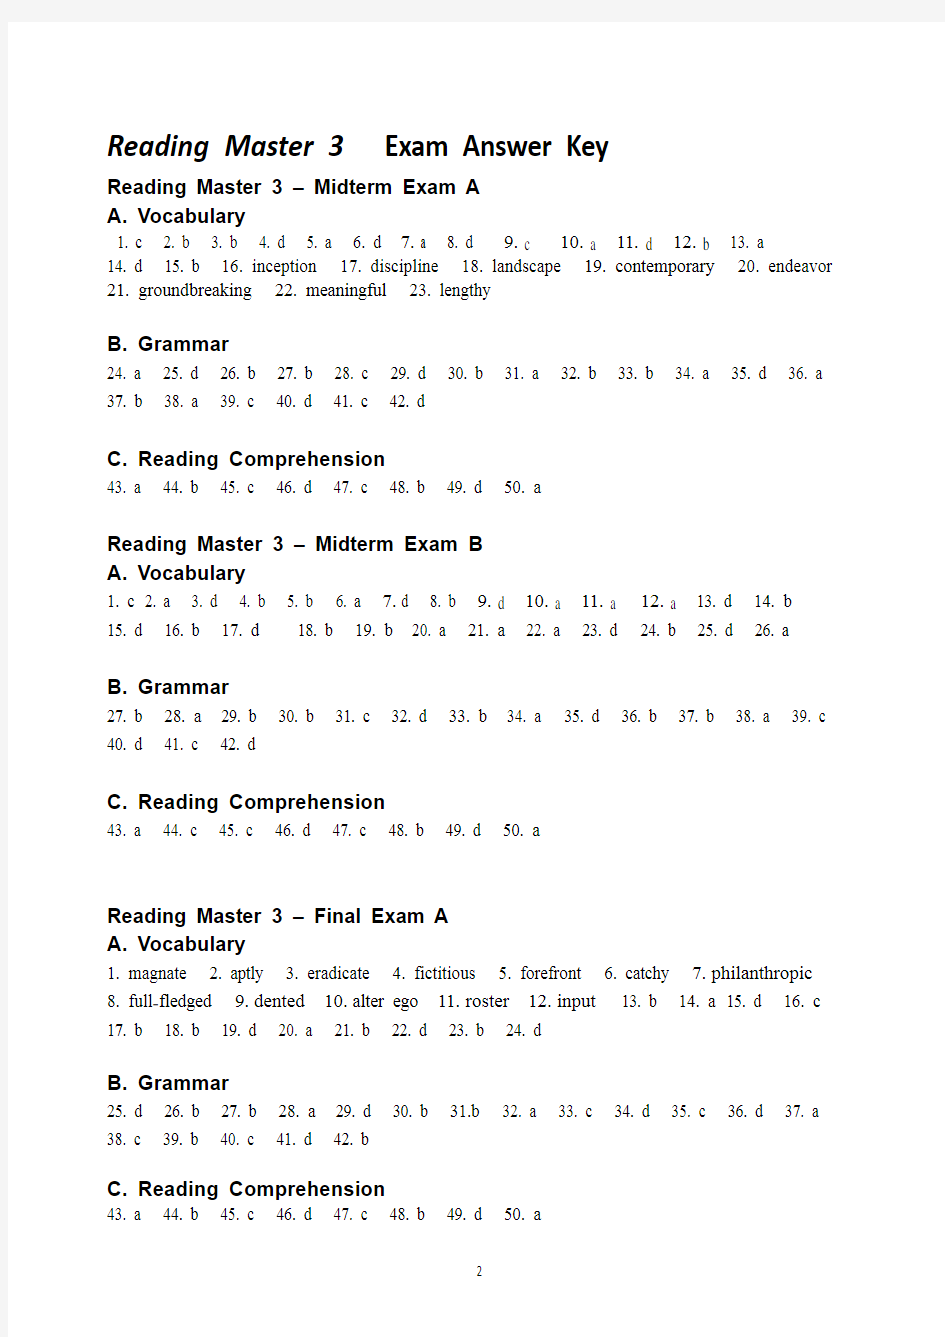 大学英语泛读教程4(第三版)期中期末试卷Reading Master 3_Exam_Answer Key